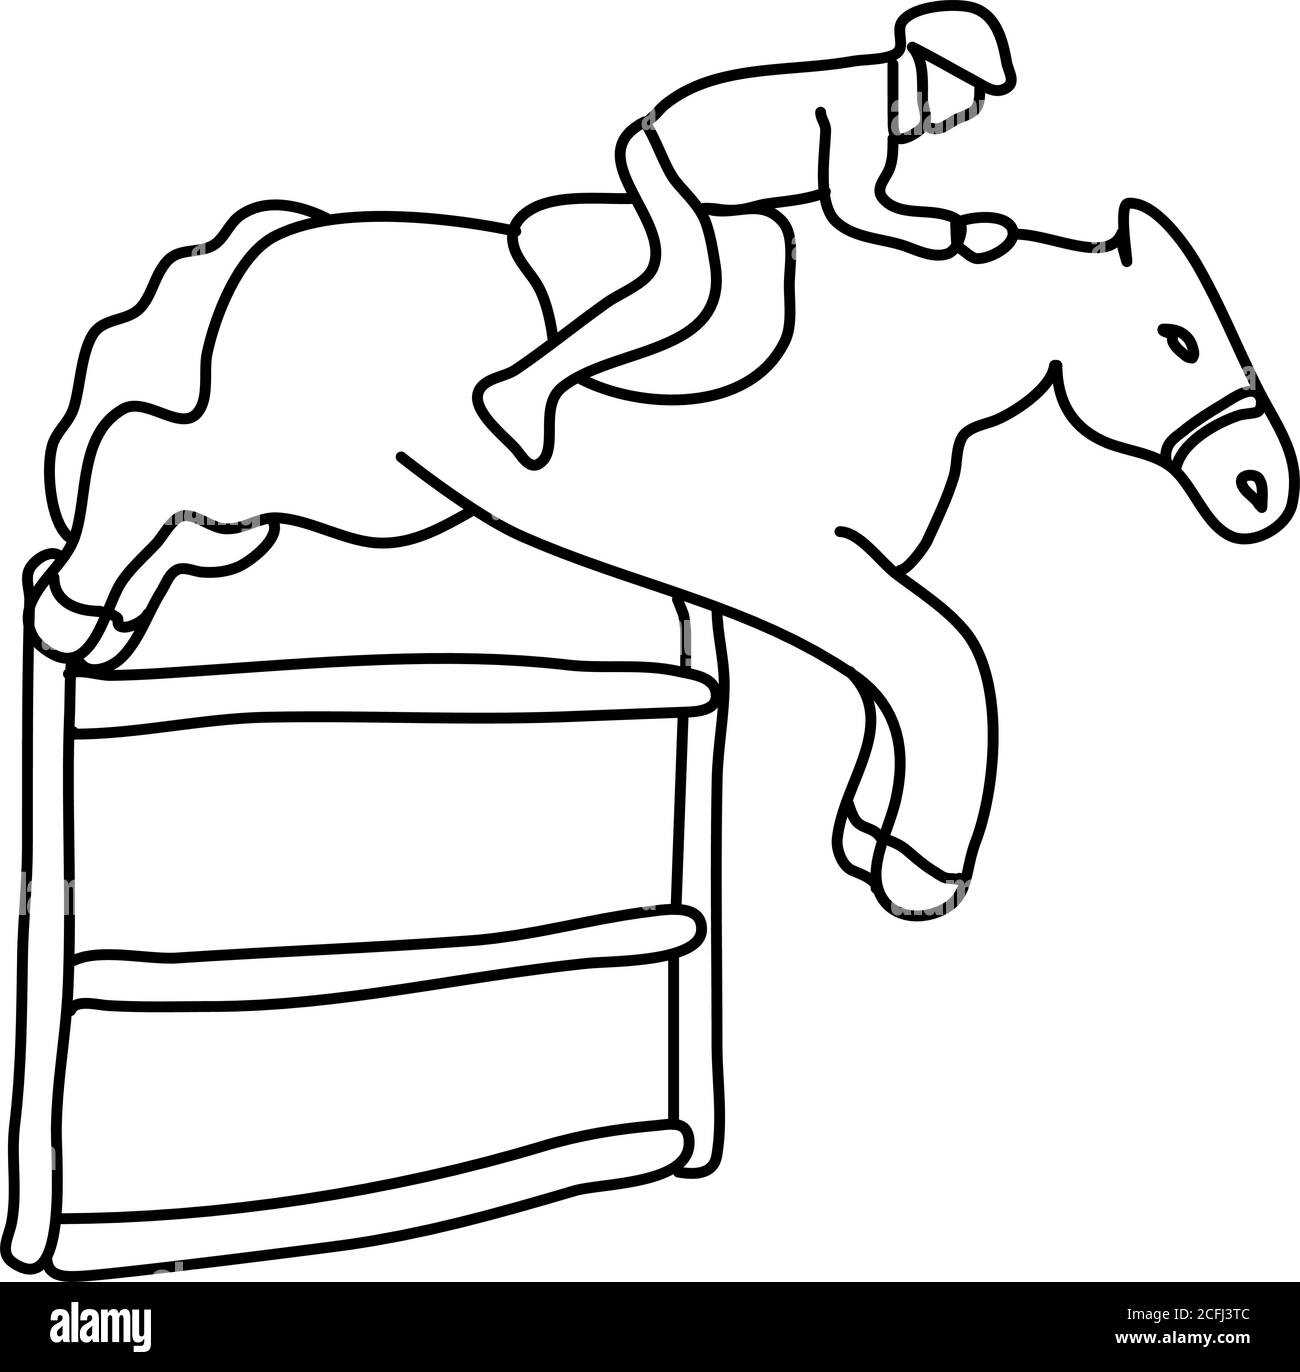 Equitazione, ippodrome. Stile di vita attivo, sport, cavallo. Disegno di illustrazione di schizzo vettoriale Illustrazione Vettoriale